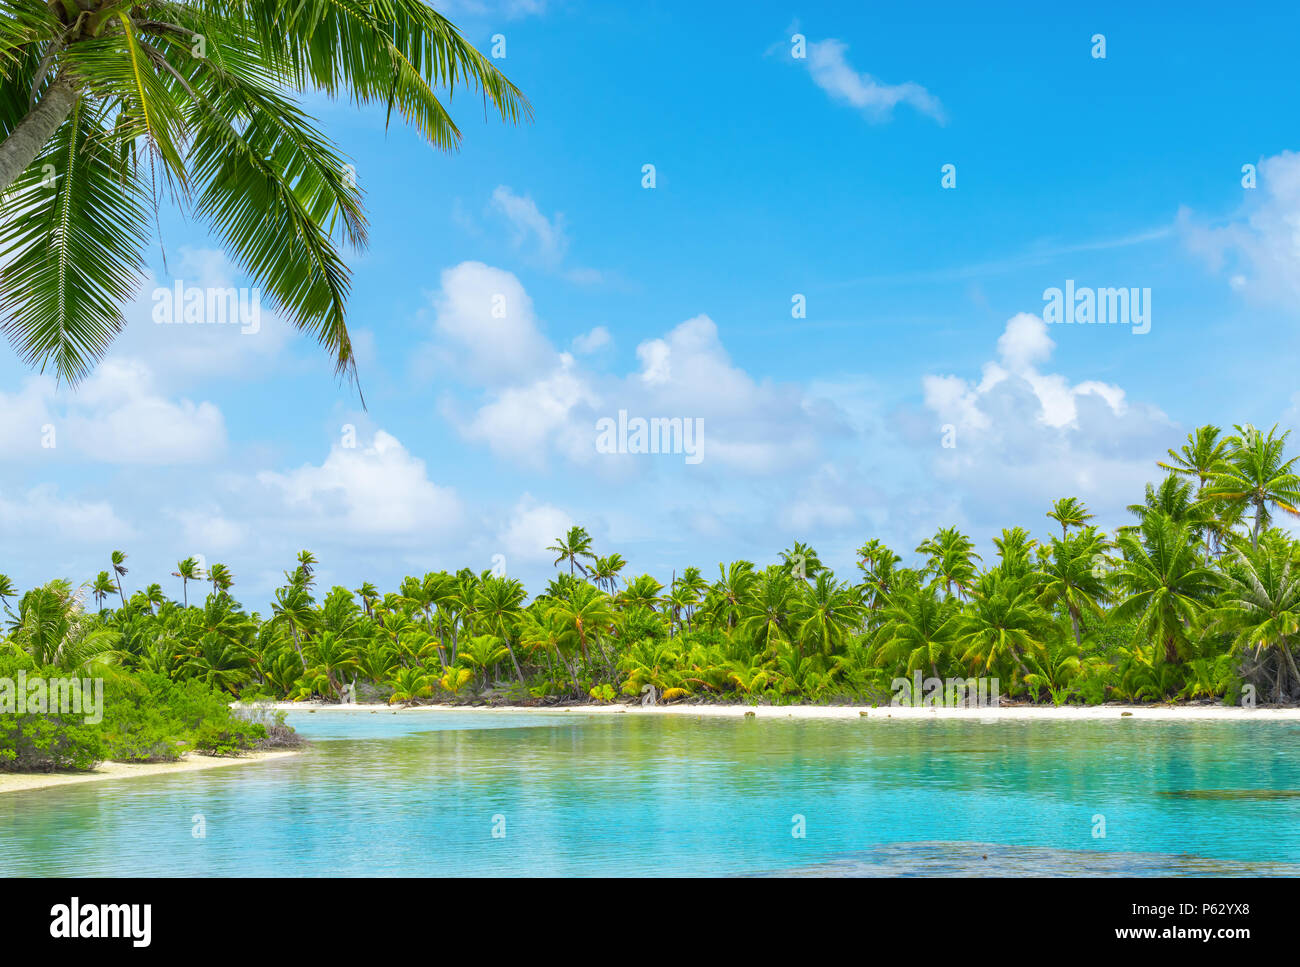 Paysages lagon tropical avec des cocotiers et ciel bleu. Exotic destination estivale. Banque D'Images